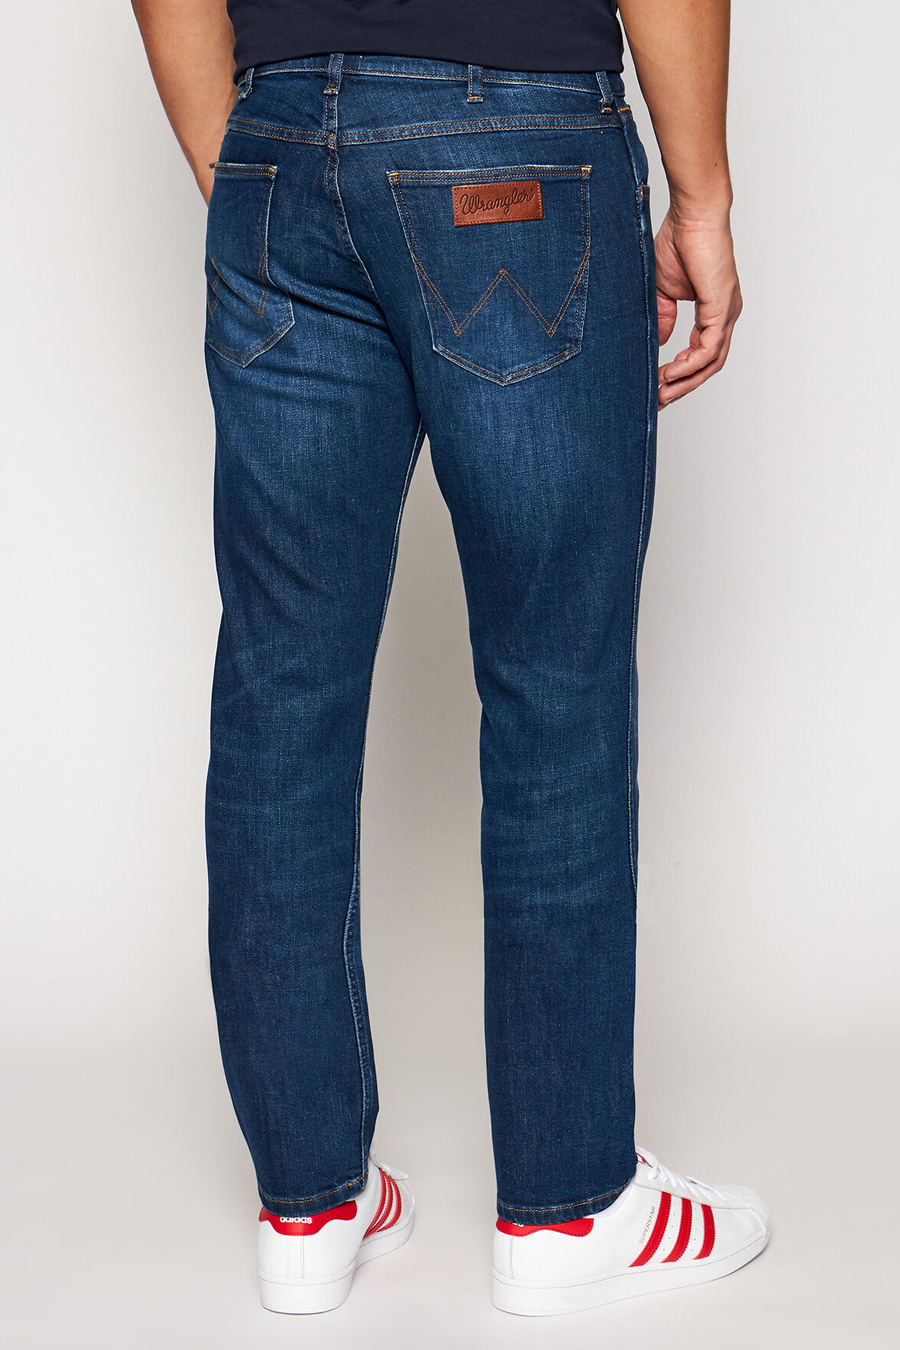 Jeans WRANGLER W15QCJ027